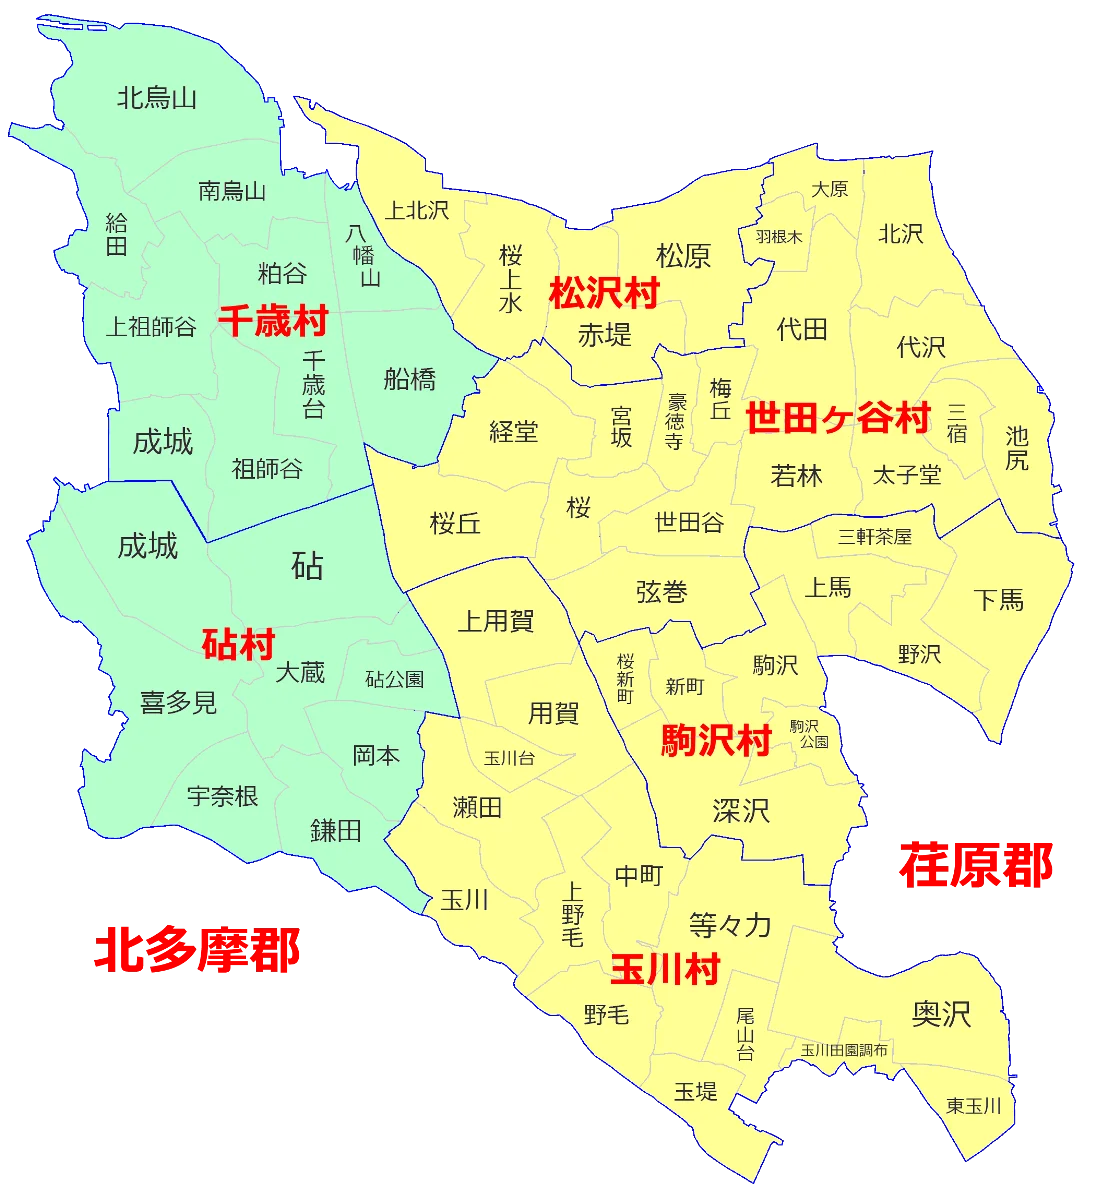 世田谷区は、2町4ヶ村が合併することによりできあがったのですが「世田谷町」「駒沢町」「松沢村」「玉川村」および「砧村」「千歲村」は昔から1つのまとまった地域として存在していたのではなく、それぞれに独自の歴史を持っていました。